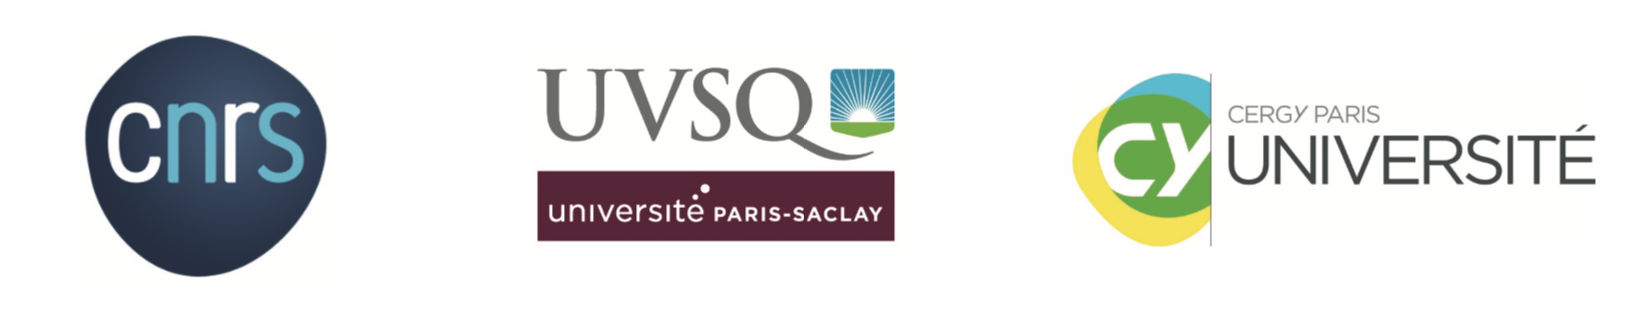 Logos CNRS, UVSQ, CY Cergy Paris Université